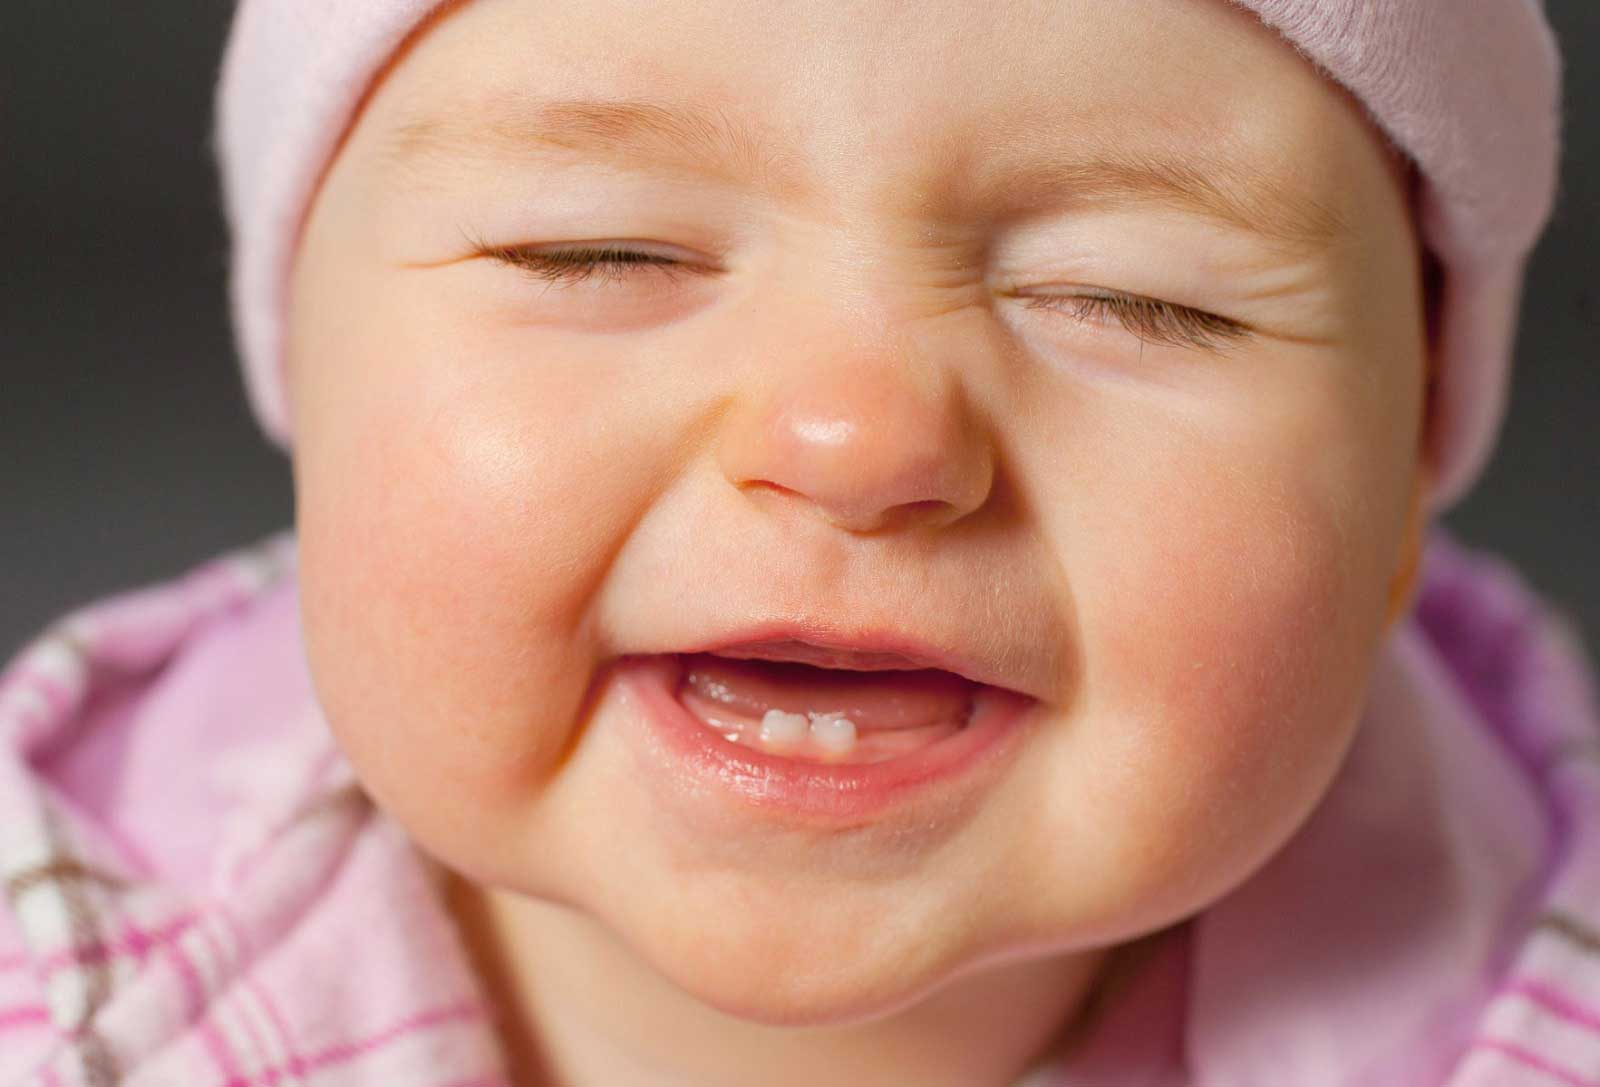 مراحل دندان در آوردن کودک و راهکارهای تسکین درد چیست؟